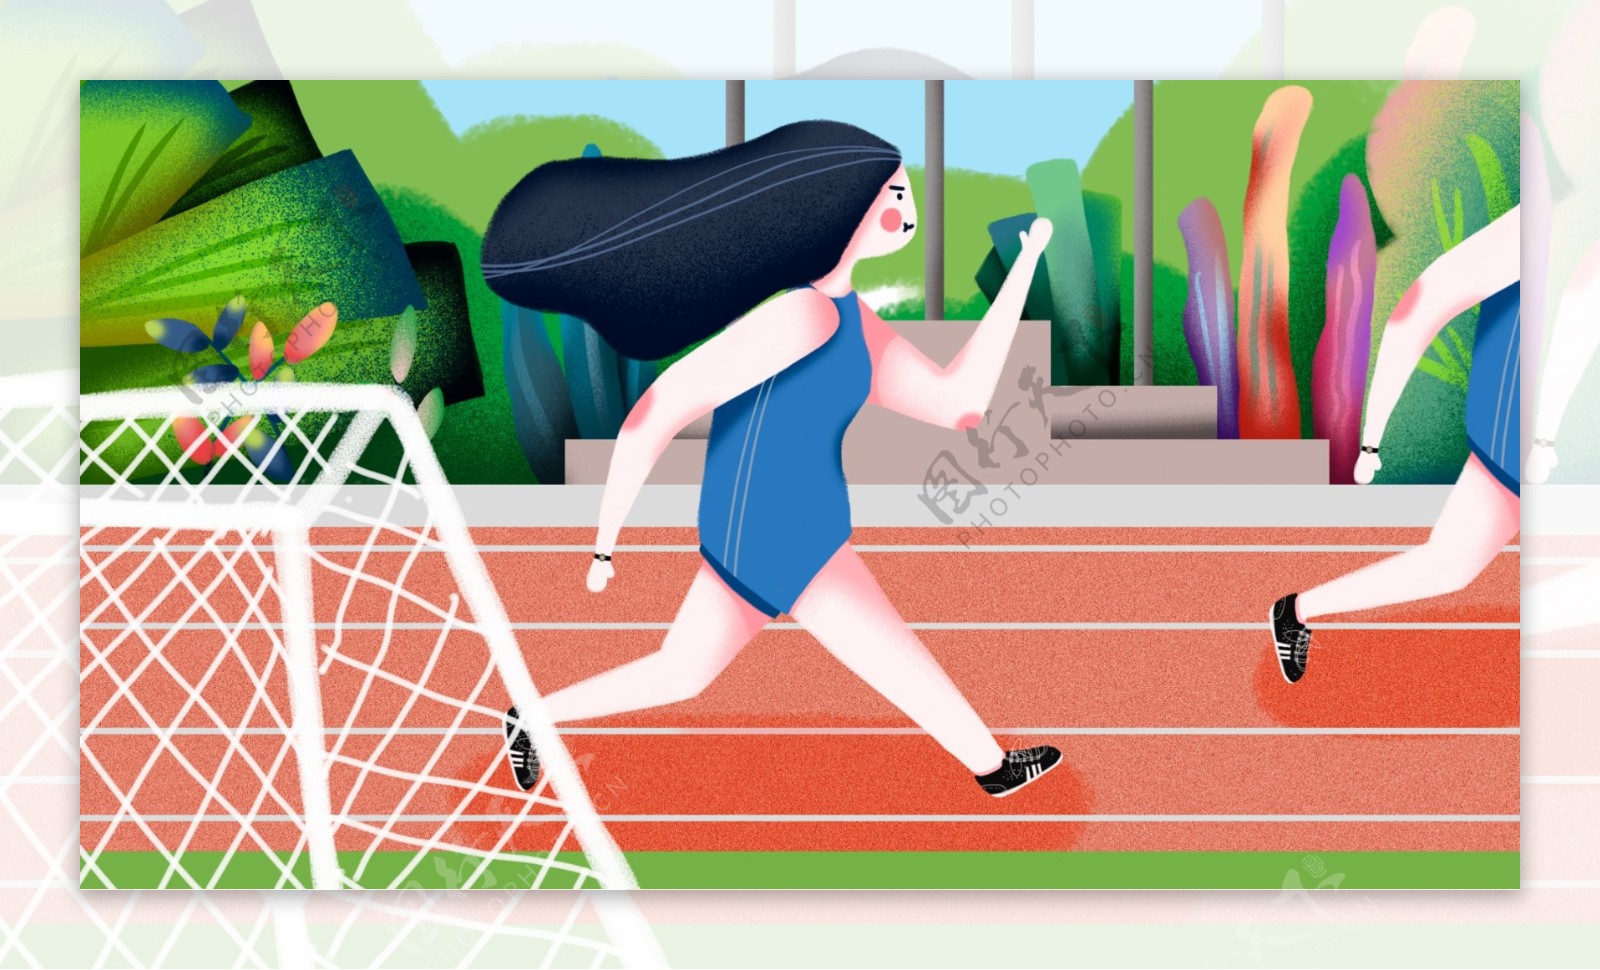 操场上跑步比赛的女生卡通背景